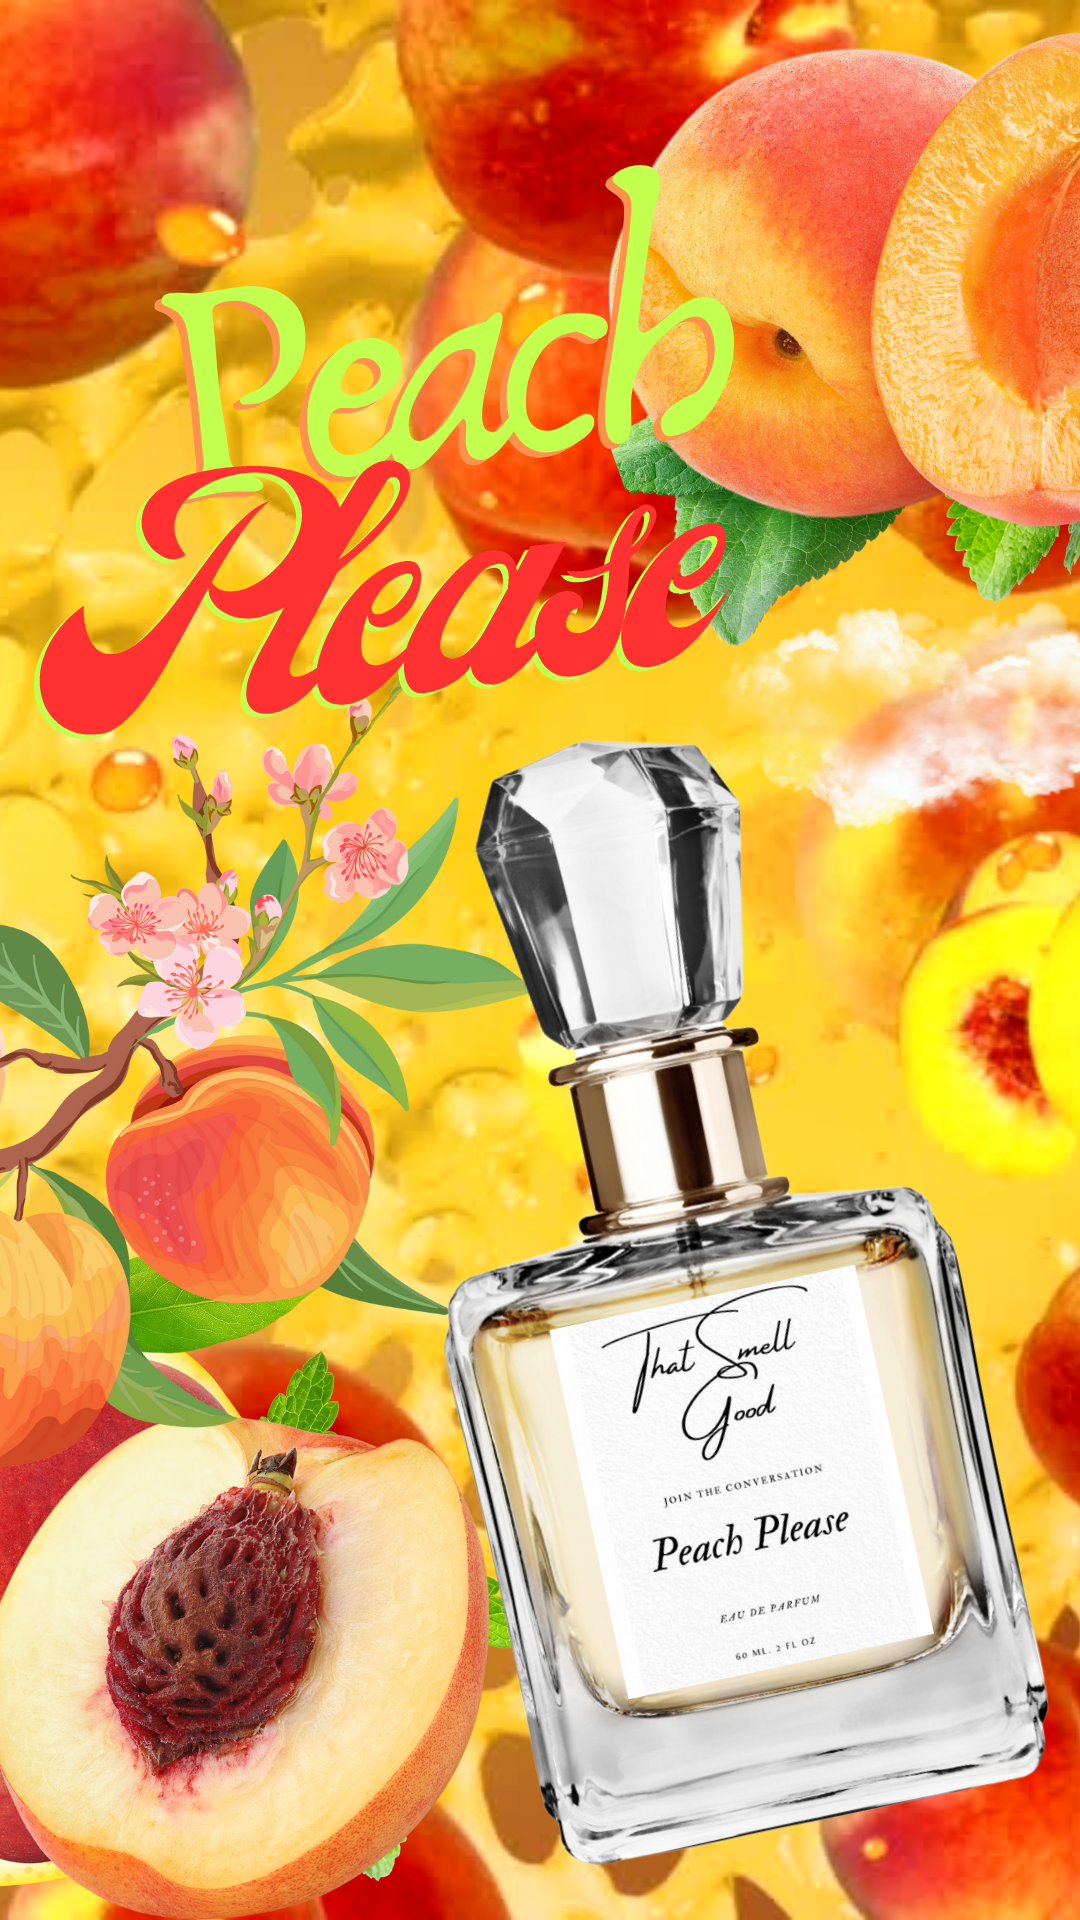 Peach Please Eau De Parfum